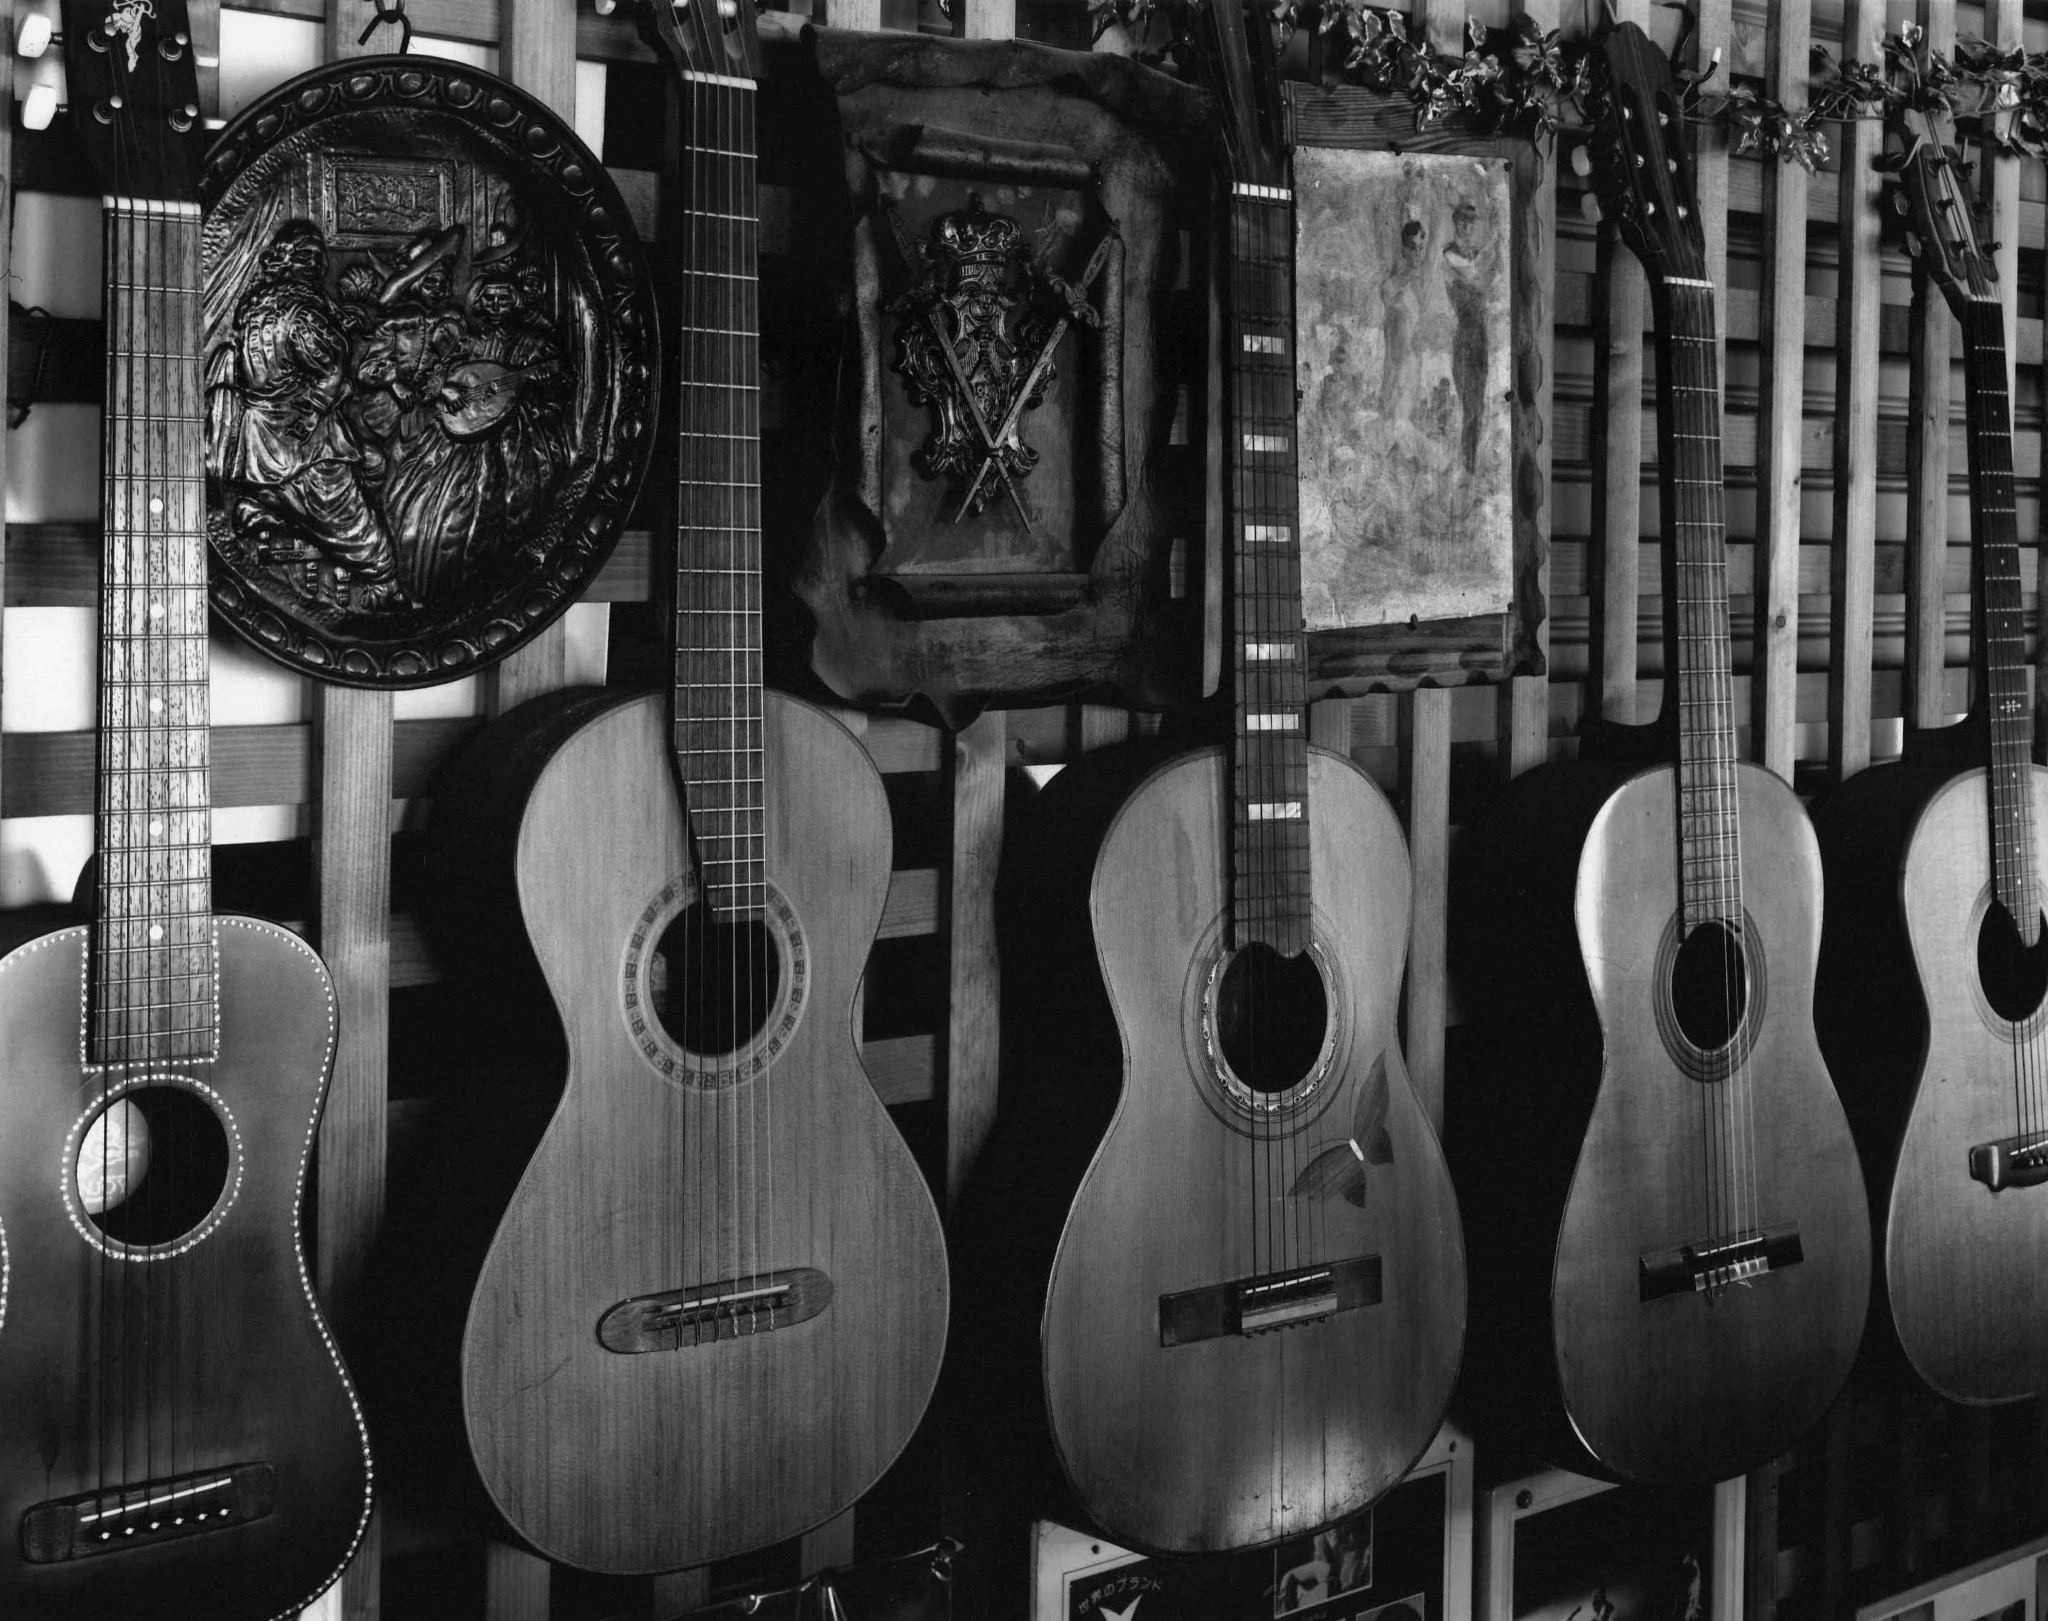 Το ιαπωνικό εργαστήριο που παράγει τις πιο θρυλικές κιθάρες